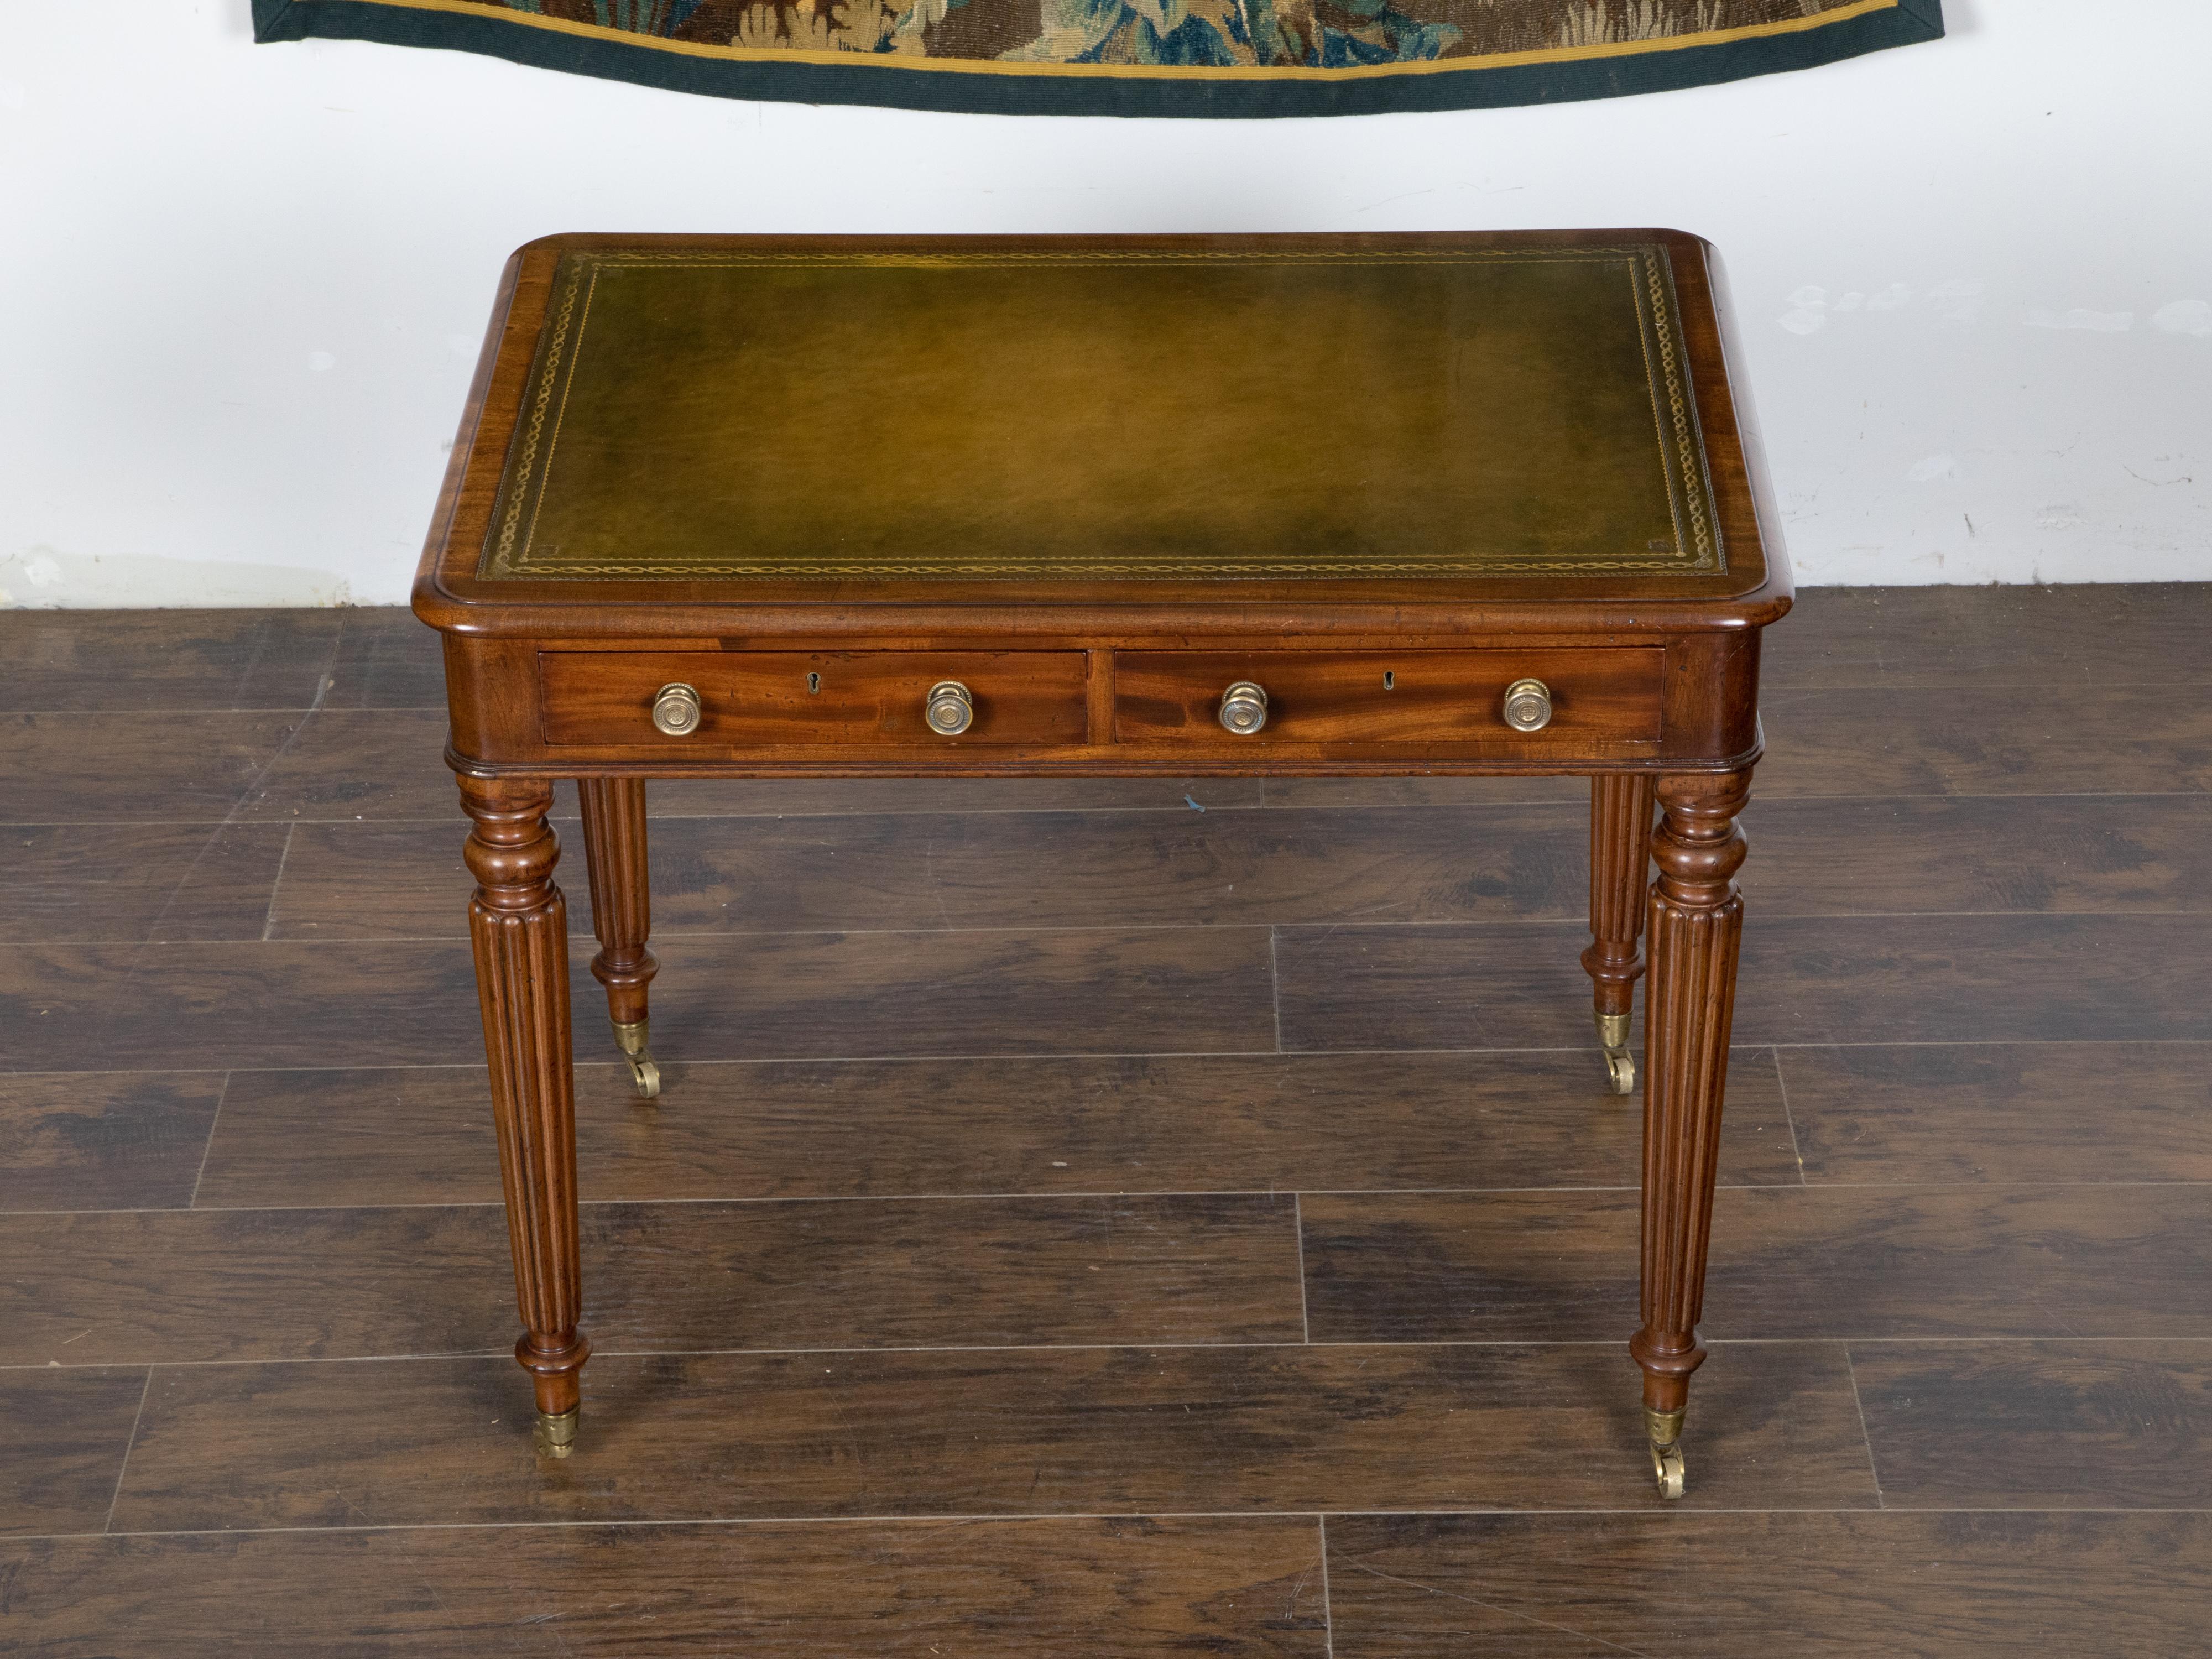 Ein englischer Mahagoni-Schreibtisch aus dem 19. Jahrhundert, mit grüner Lederplatte, vergoldeten Akzenten, geschnitzten, geriffelten Beinen, zwei Schubladen und Messingrollen. Der im 19. Jahrhundert in England hergestellte Schreibtisch hat eine